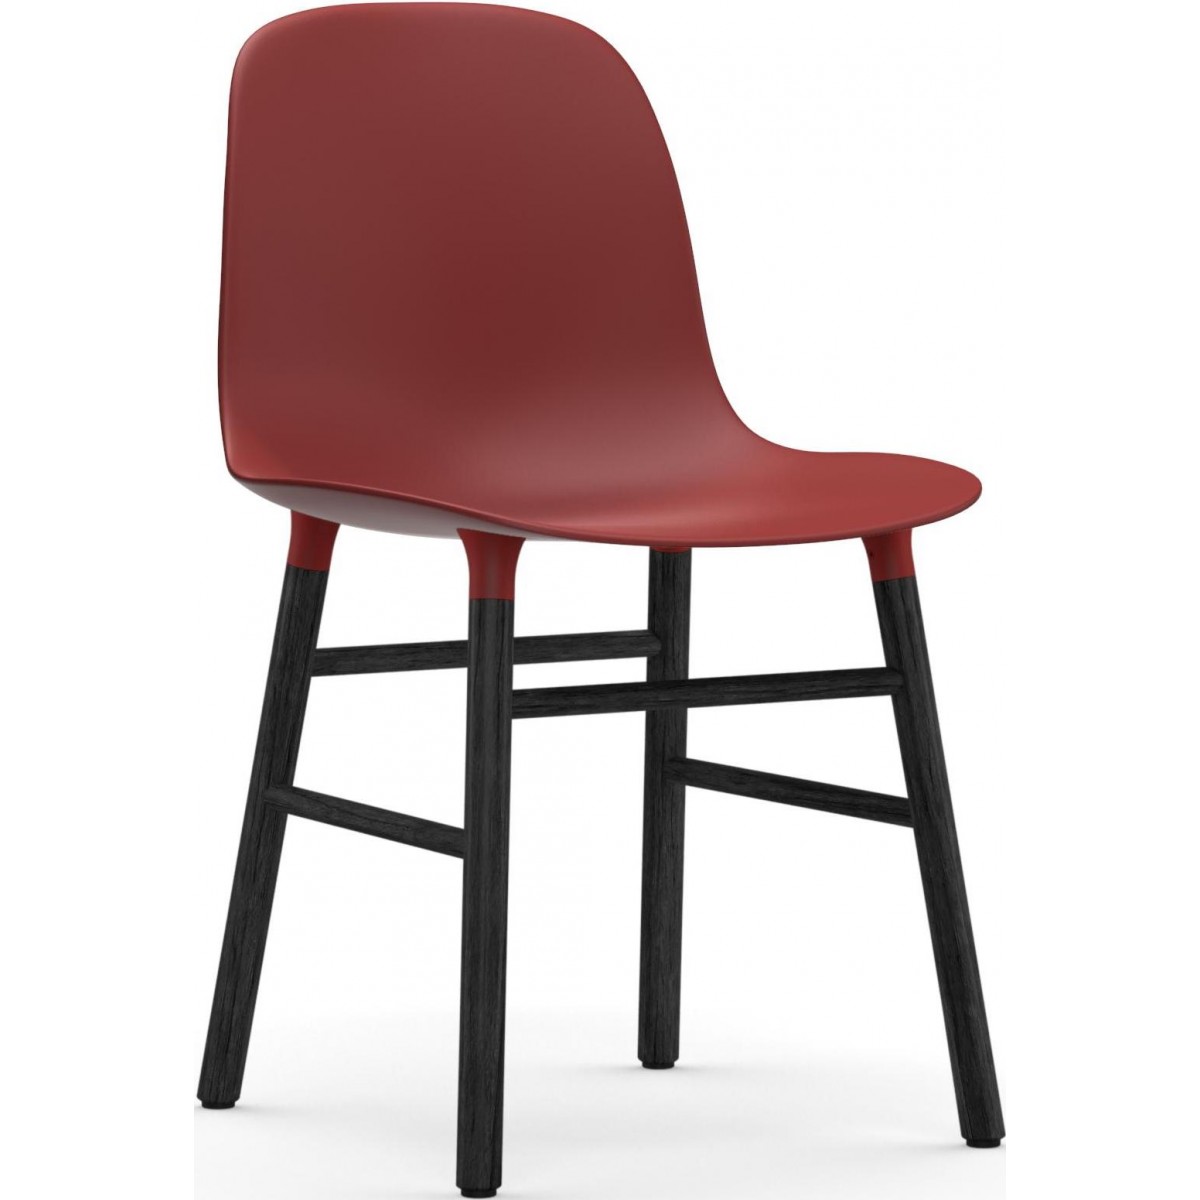 Rouge / Chêne peint en noir – Chaise Form